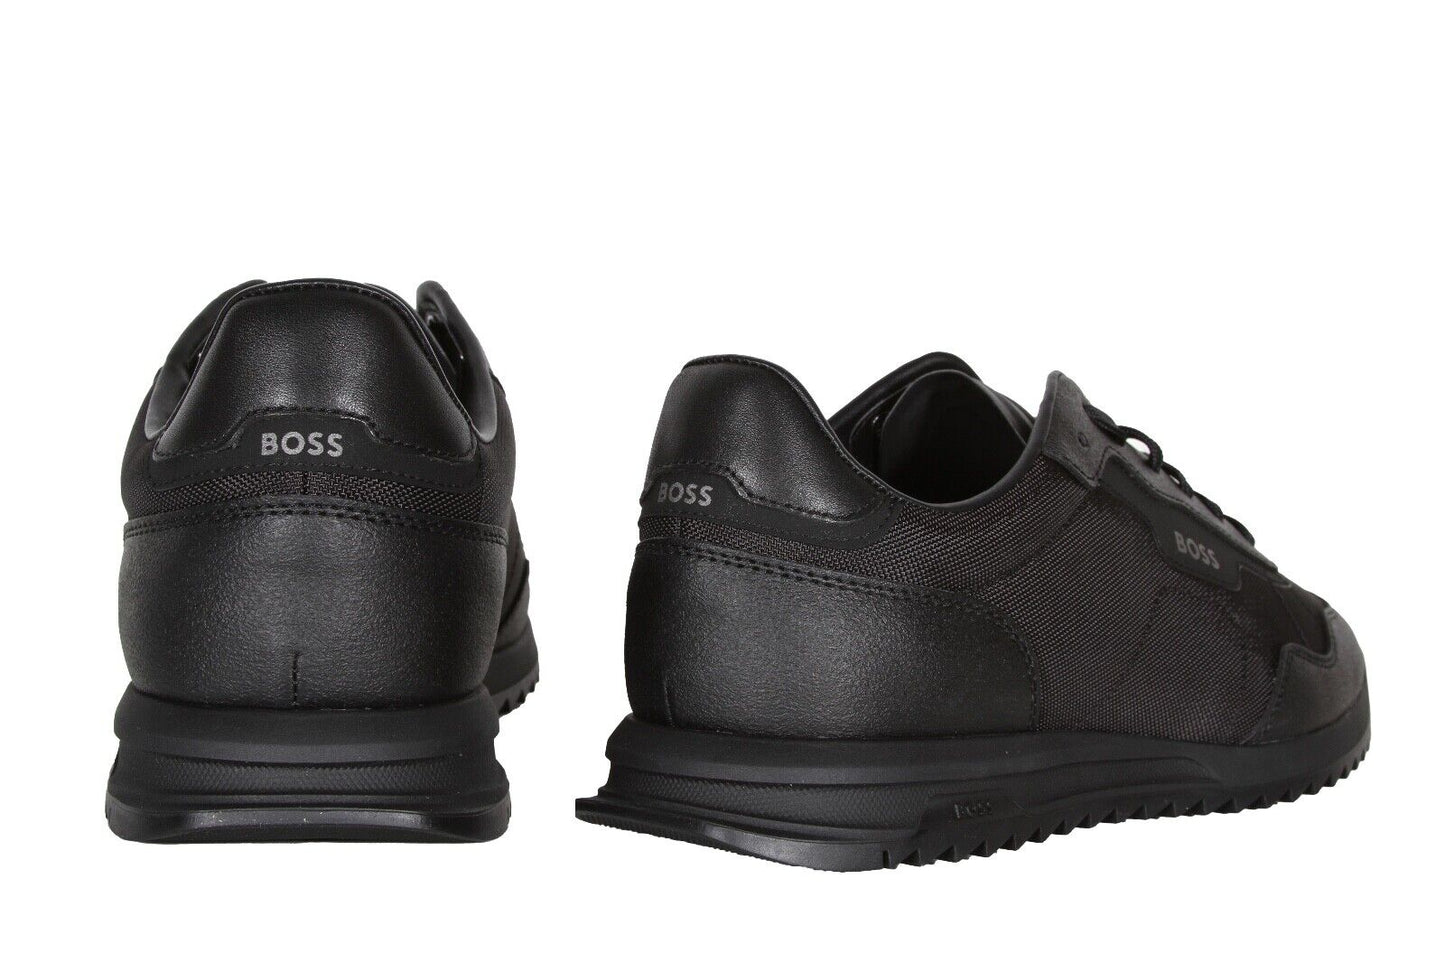 HUGO BOSS Zayn_Lowp_txrb Men’s Sneakers in Black 50502884-005